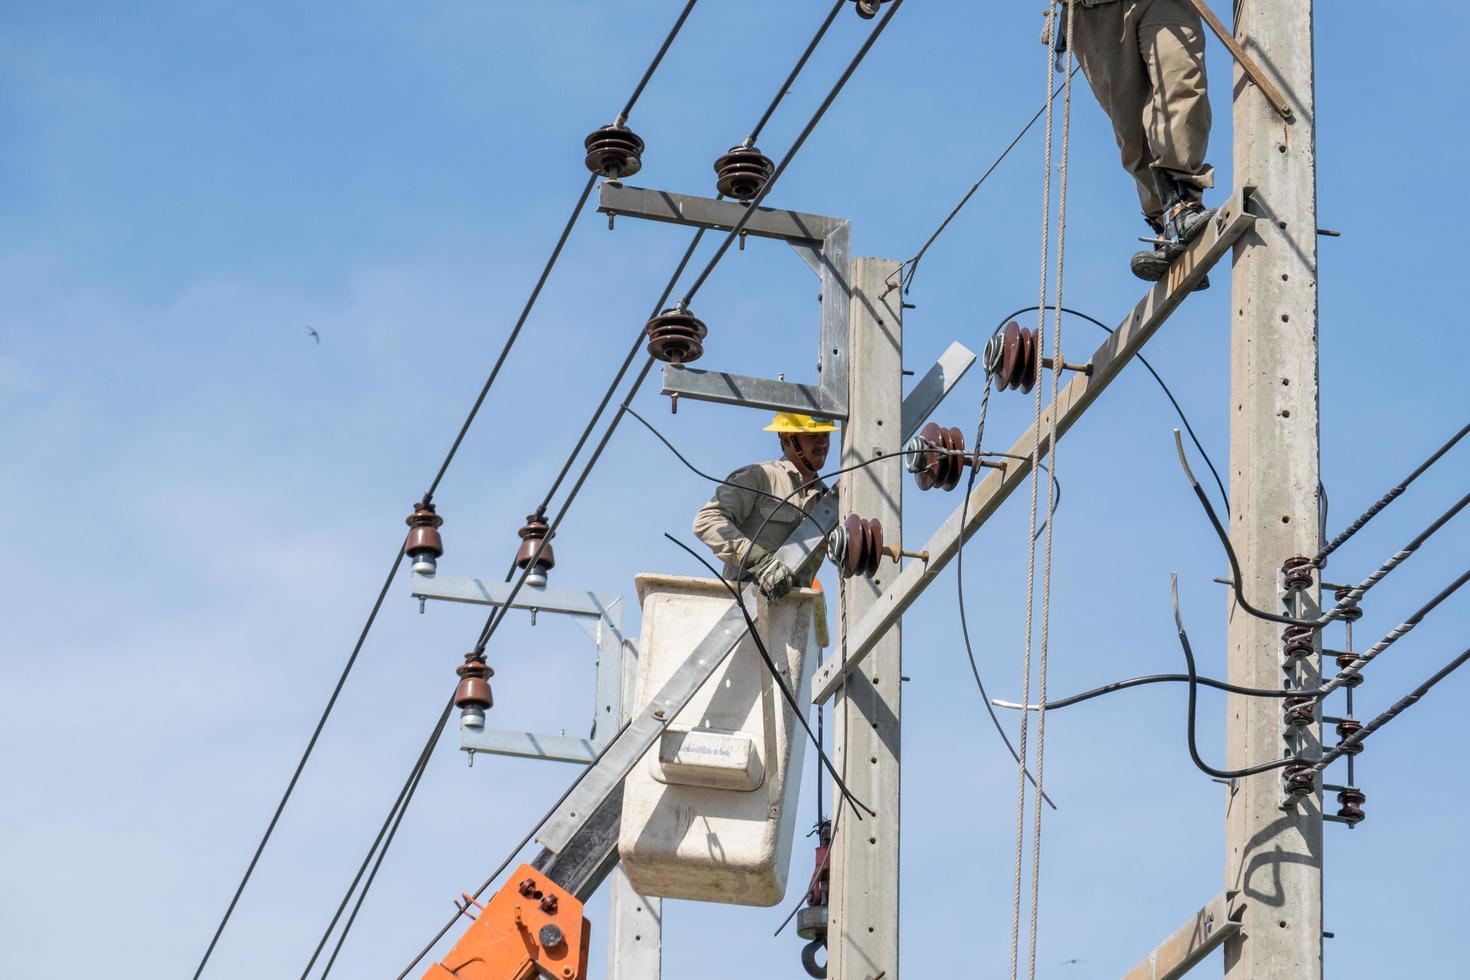 bangkok, thailand 2015 - elektriciens werken aan het repareren van hoogspanningsleidingen foto